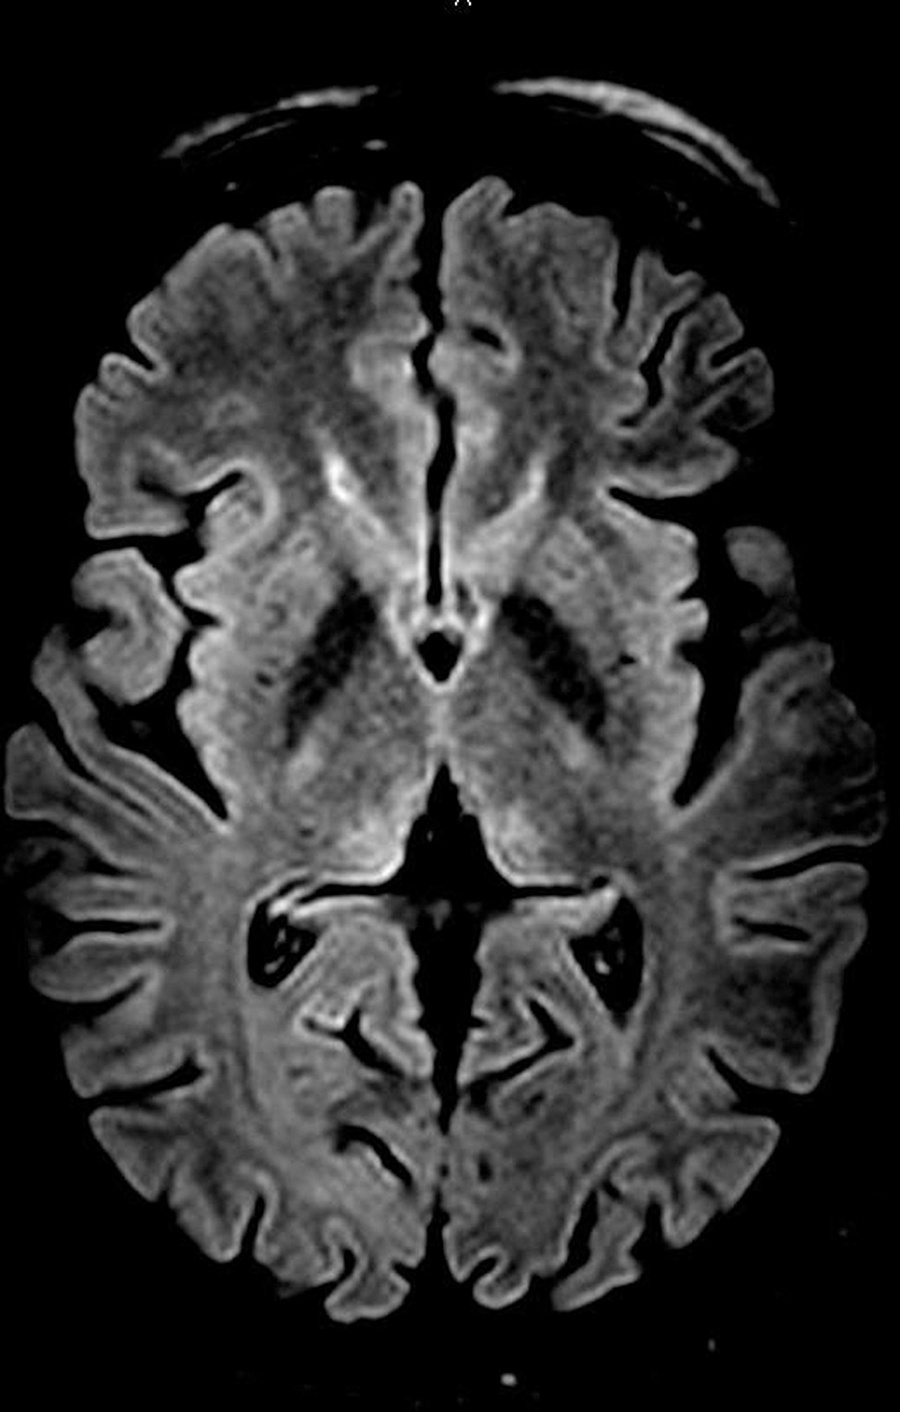 Wernicke Encephalopathy as a Complication of Hyperemesis Gravidarum: Case Report